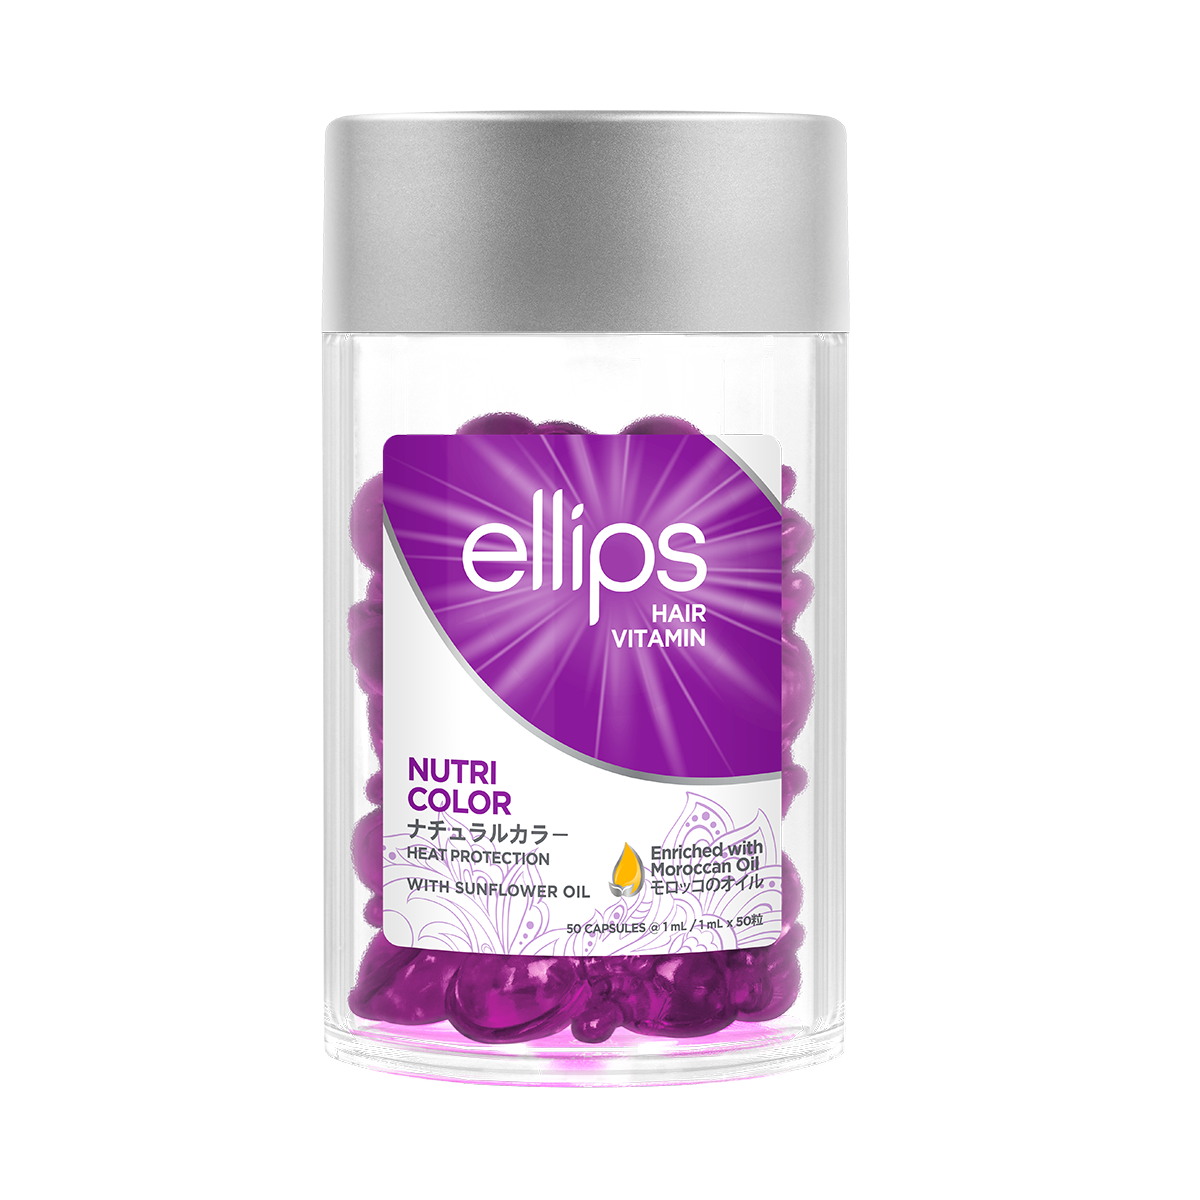 ellips Púrpura Nutri Color - Tarro de 50 cápsulas